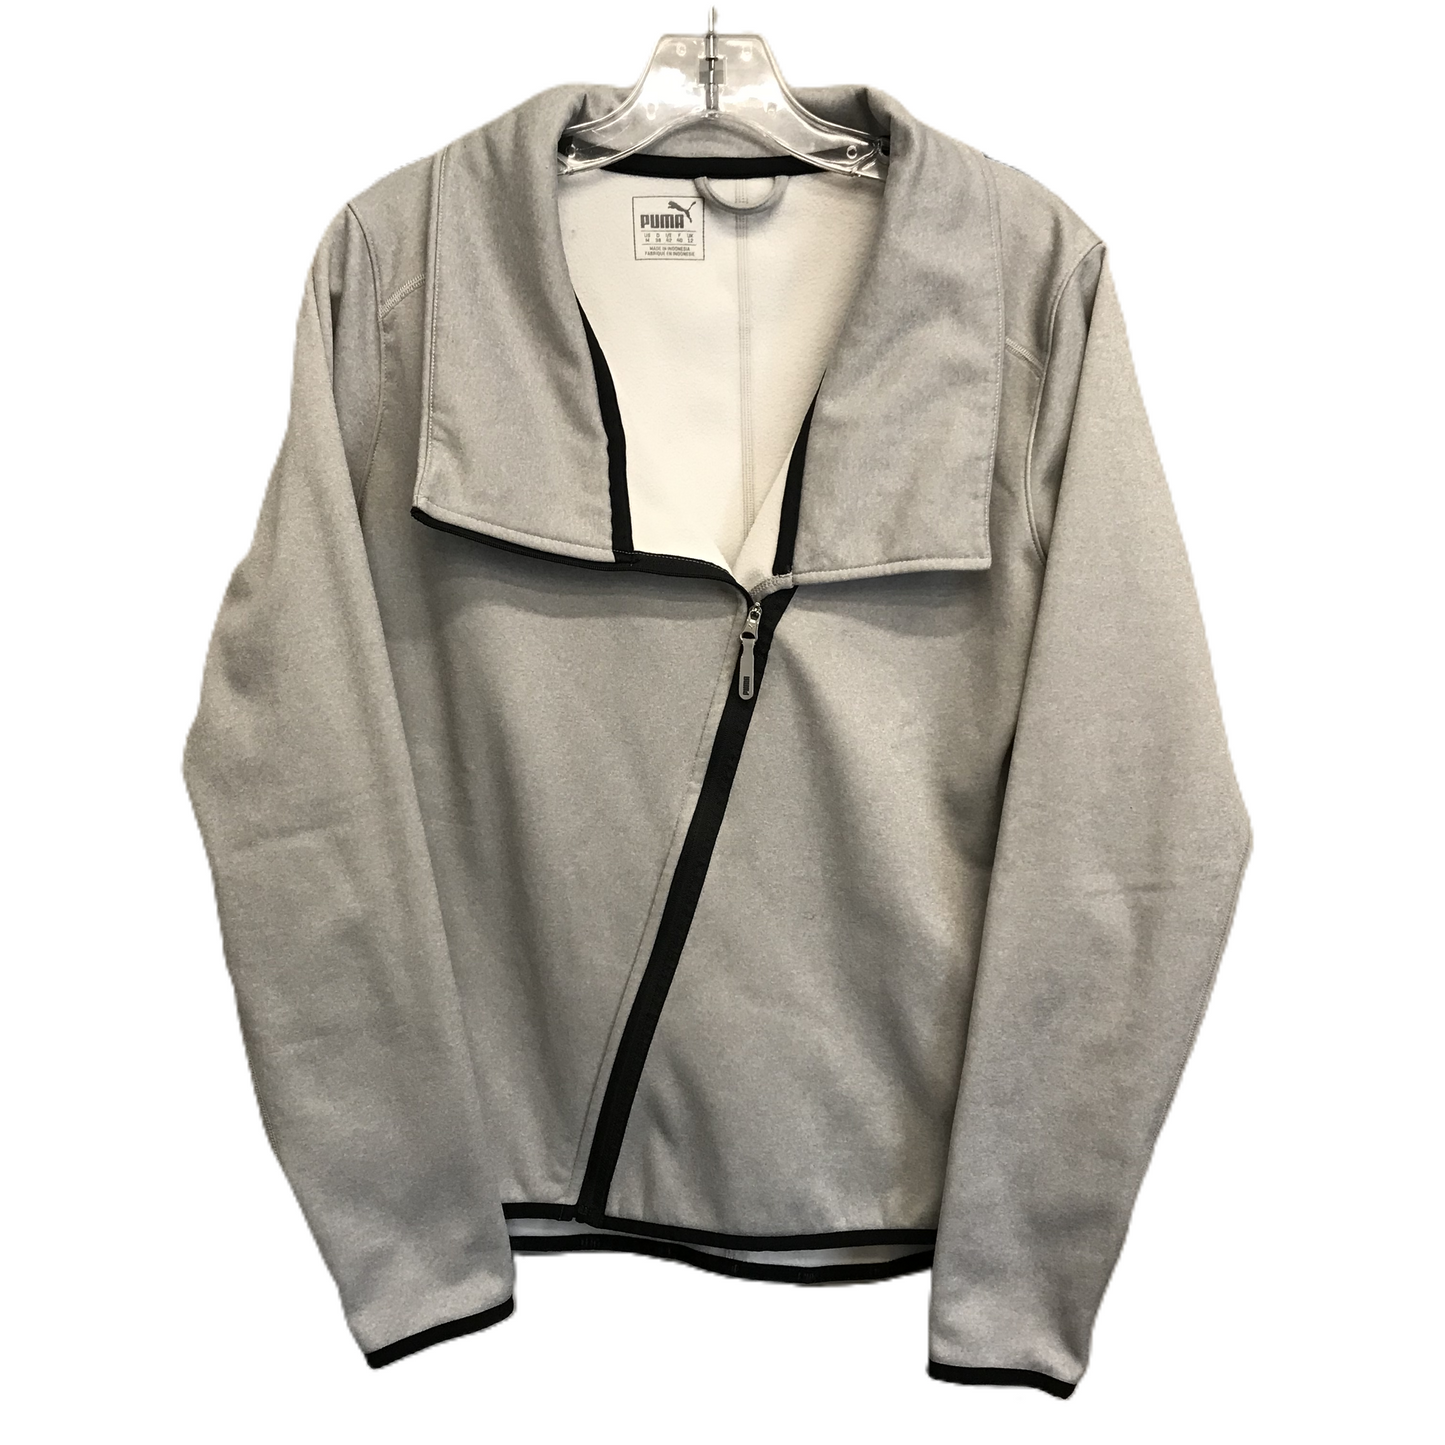 Grey Athletic Jacket By Puma, Size: M